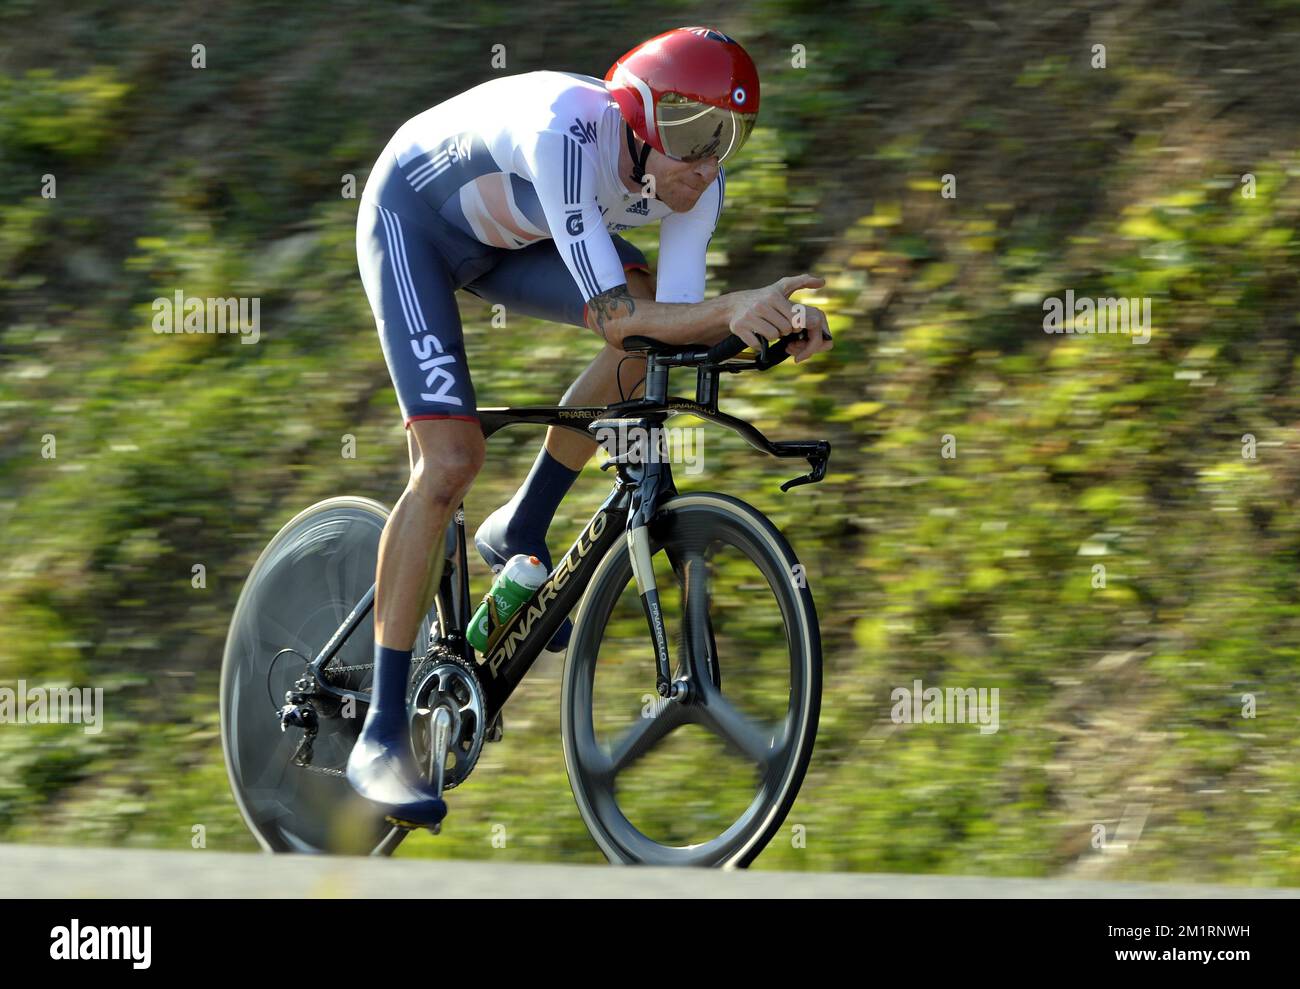 Bradley Wiggins in azione durante la prova a tempo ELITE Men ai Campionati Mondiali di Ciclismo a Firenze, mercoledì 25 settembre 2013. Foto Stock